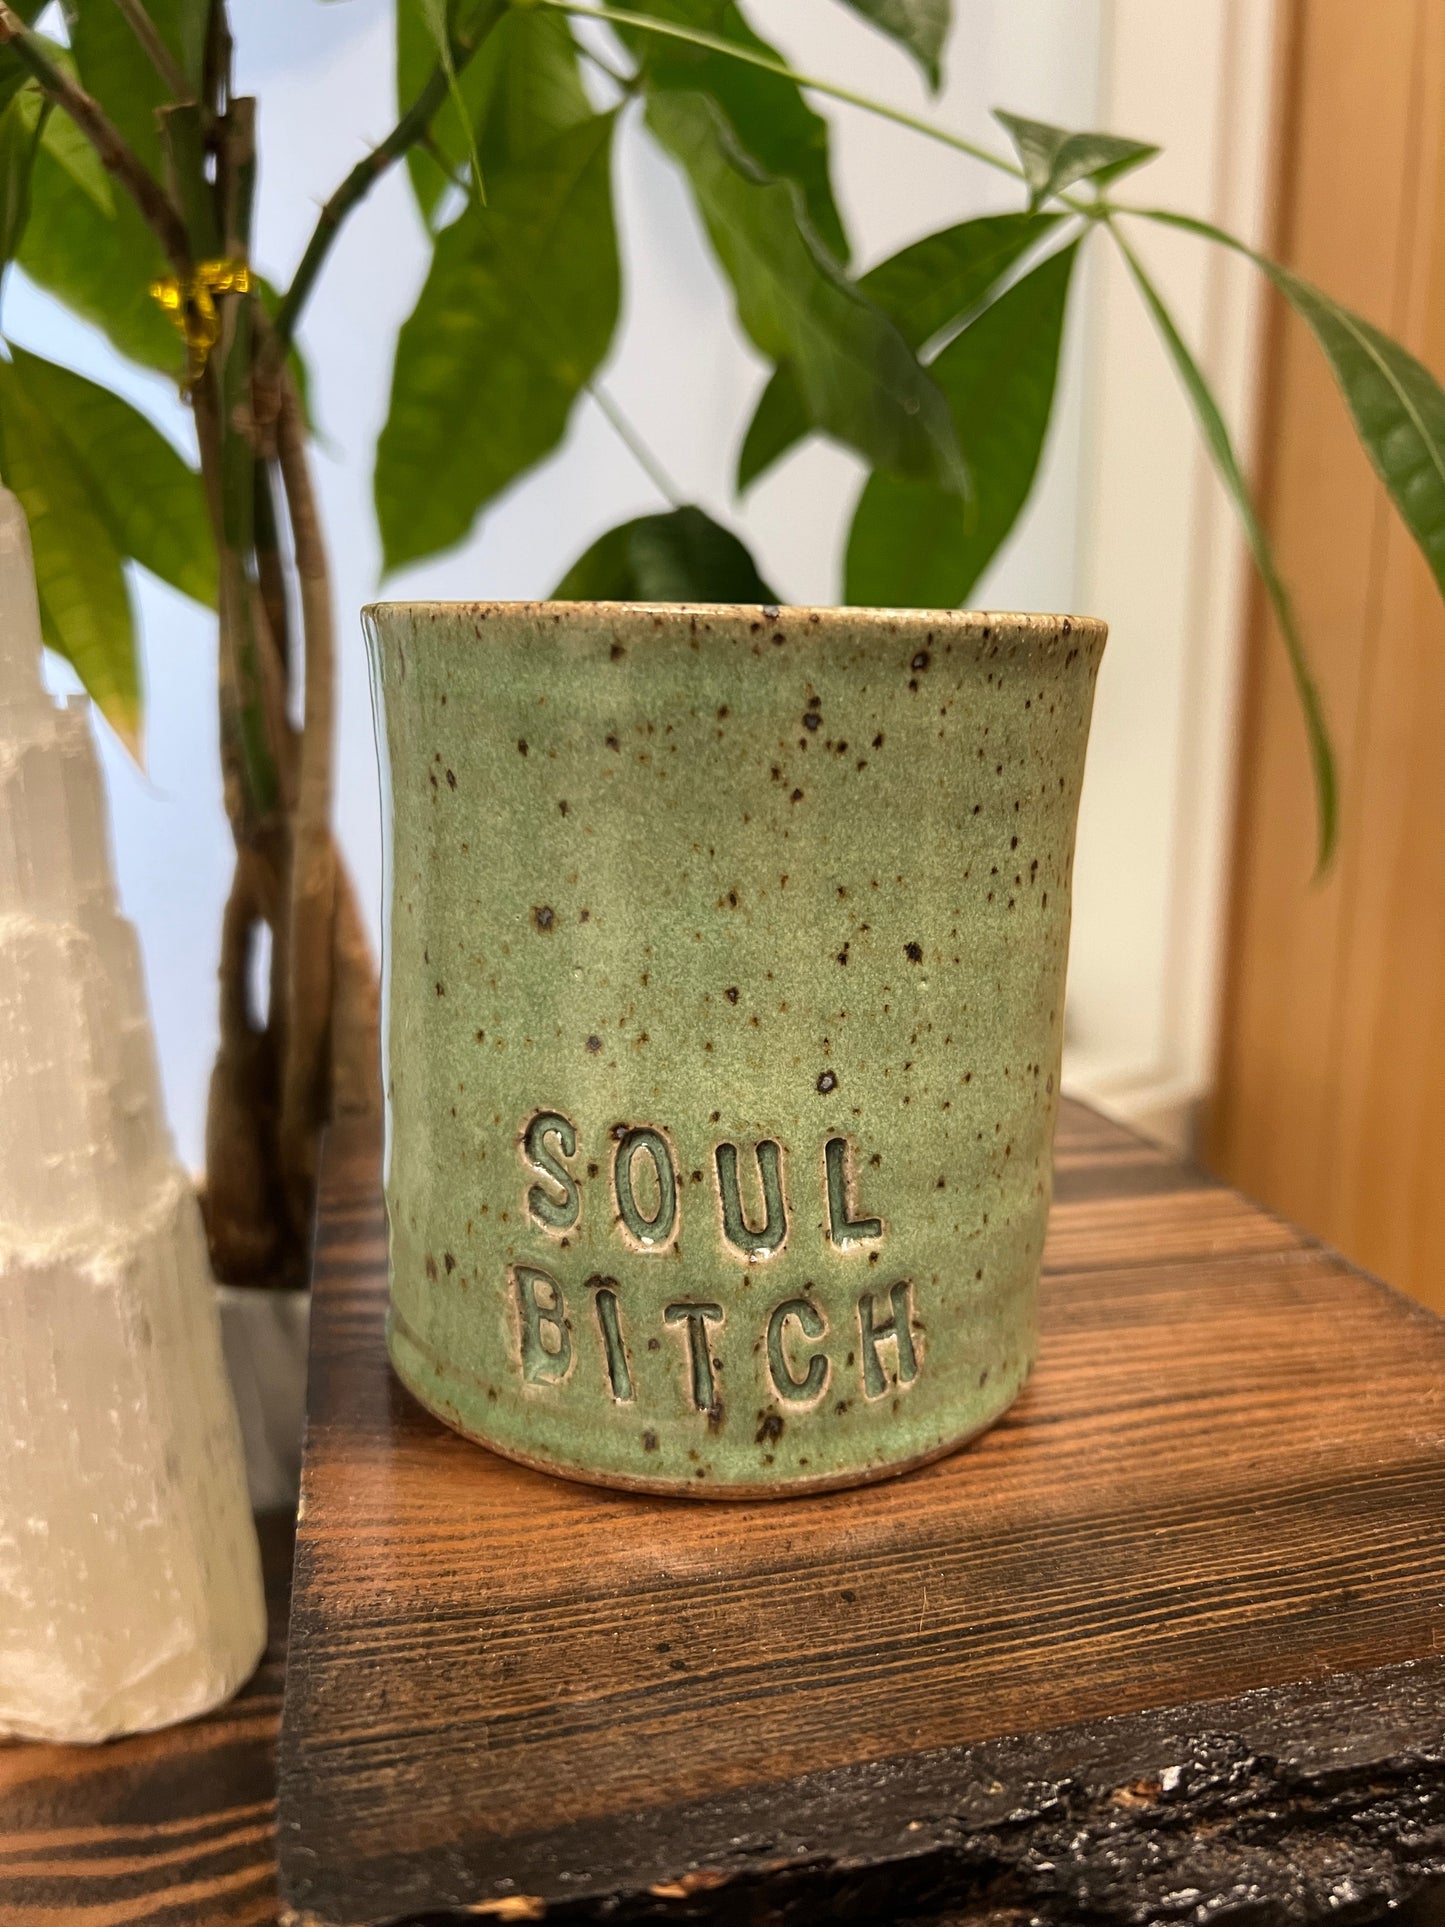 "Soul Bitch" Coffee Mugs